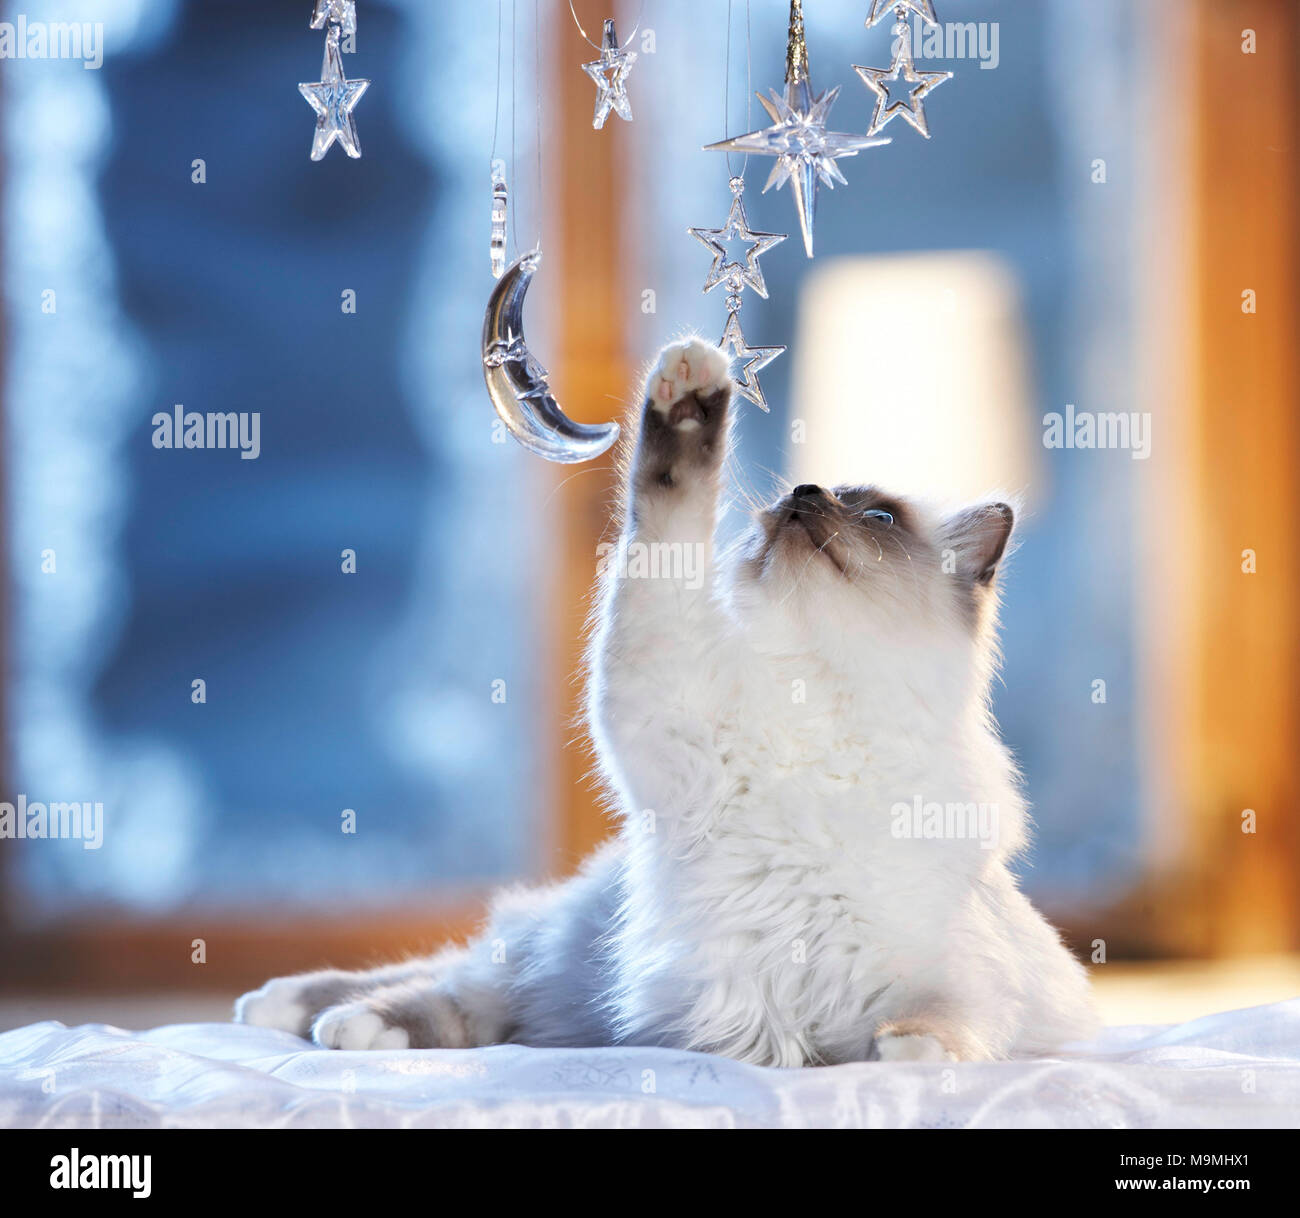 Navidad: gato sagrado de Birmania jugando con la luna y las estrellas de vidrio en una festiva ventana decorada. Alemania Foto de stock